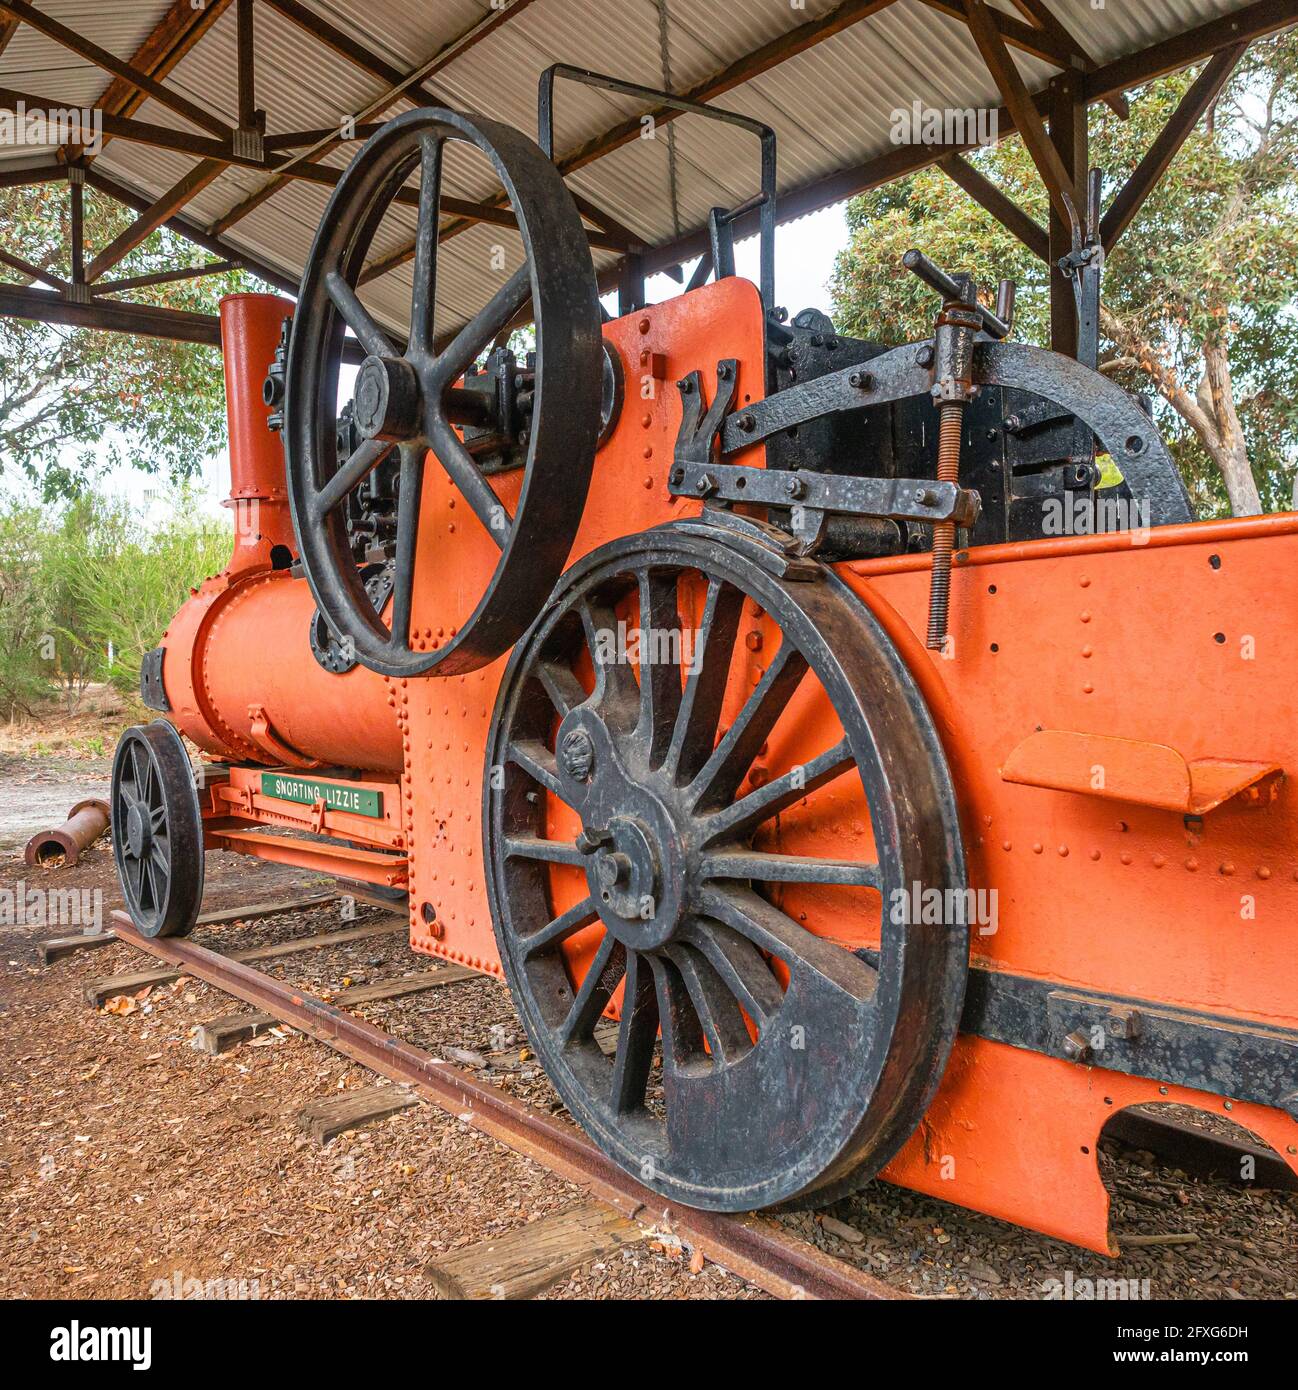 La plongée avec tuba Lizzie est une machine à vapeur au musée Age of Steam de Manjimup, en Australie occidentale. Banque D'Images